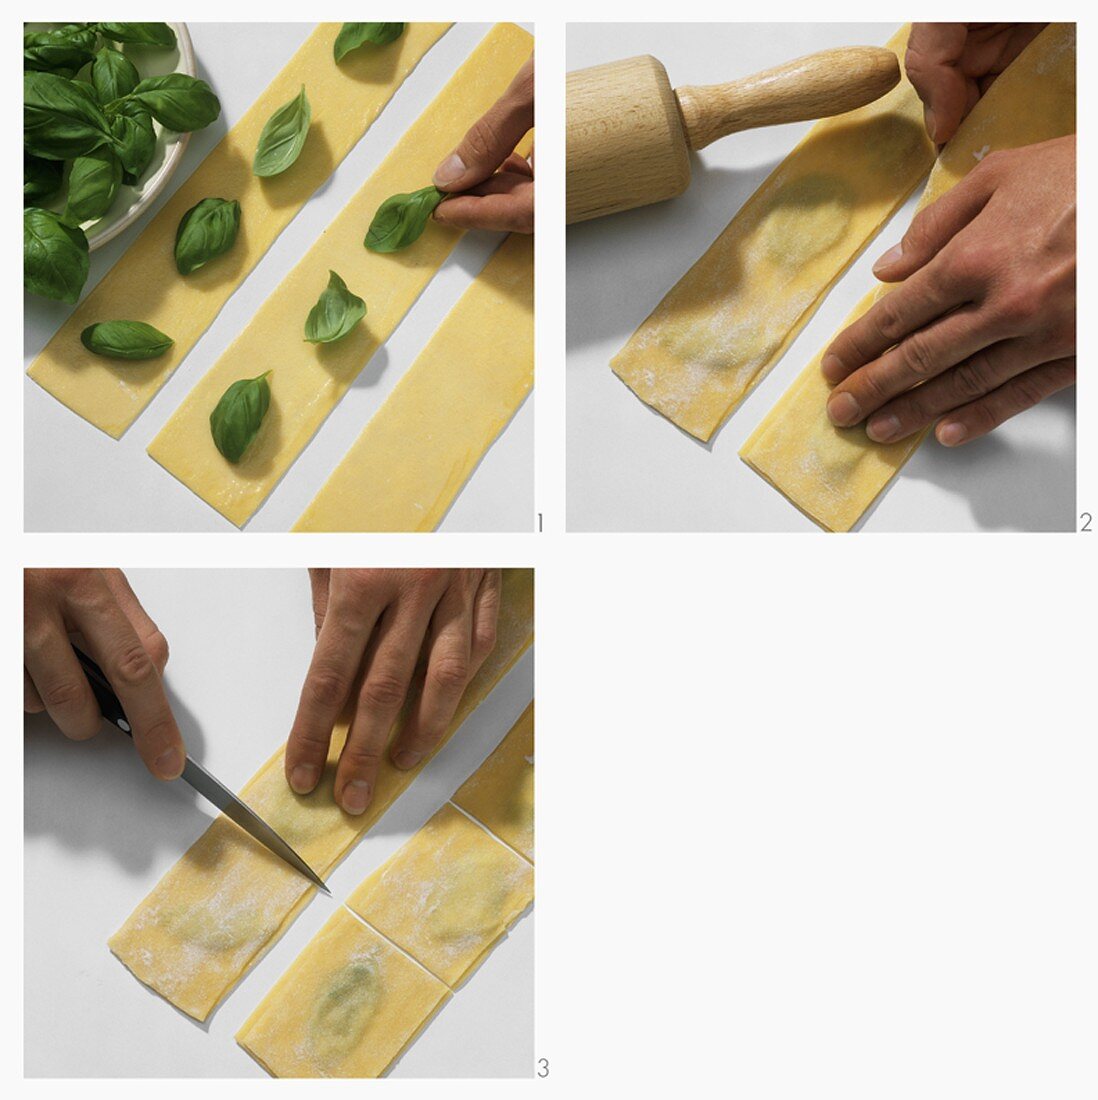 Making basil pasta